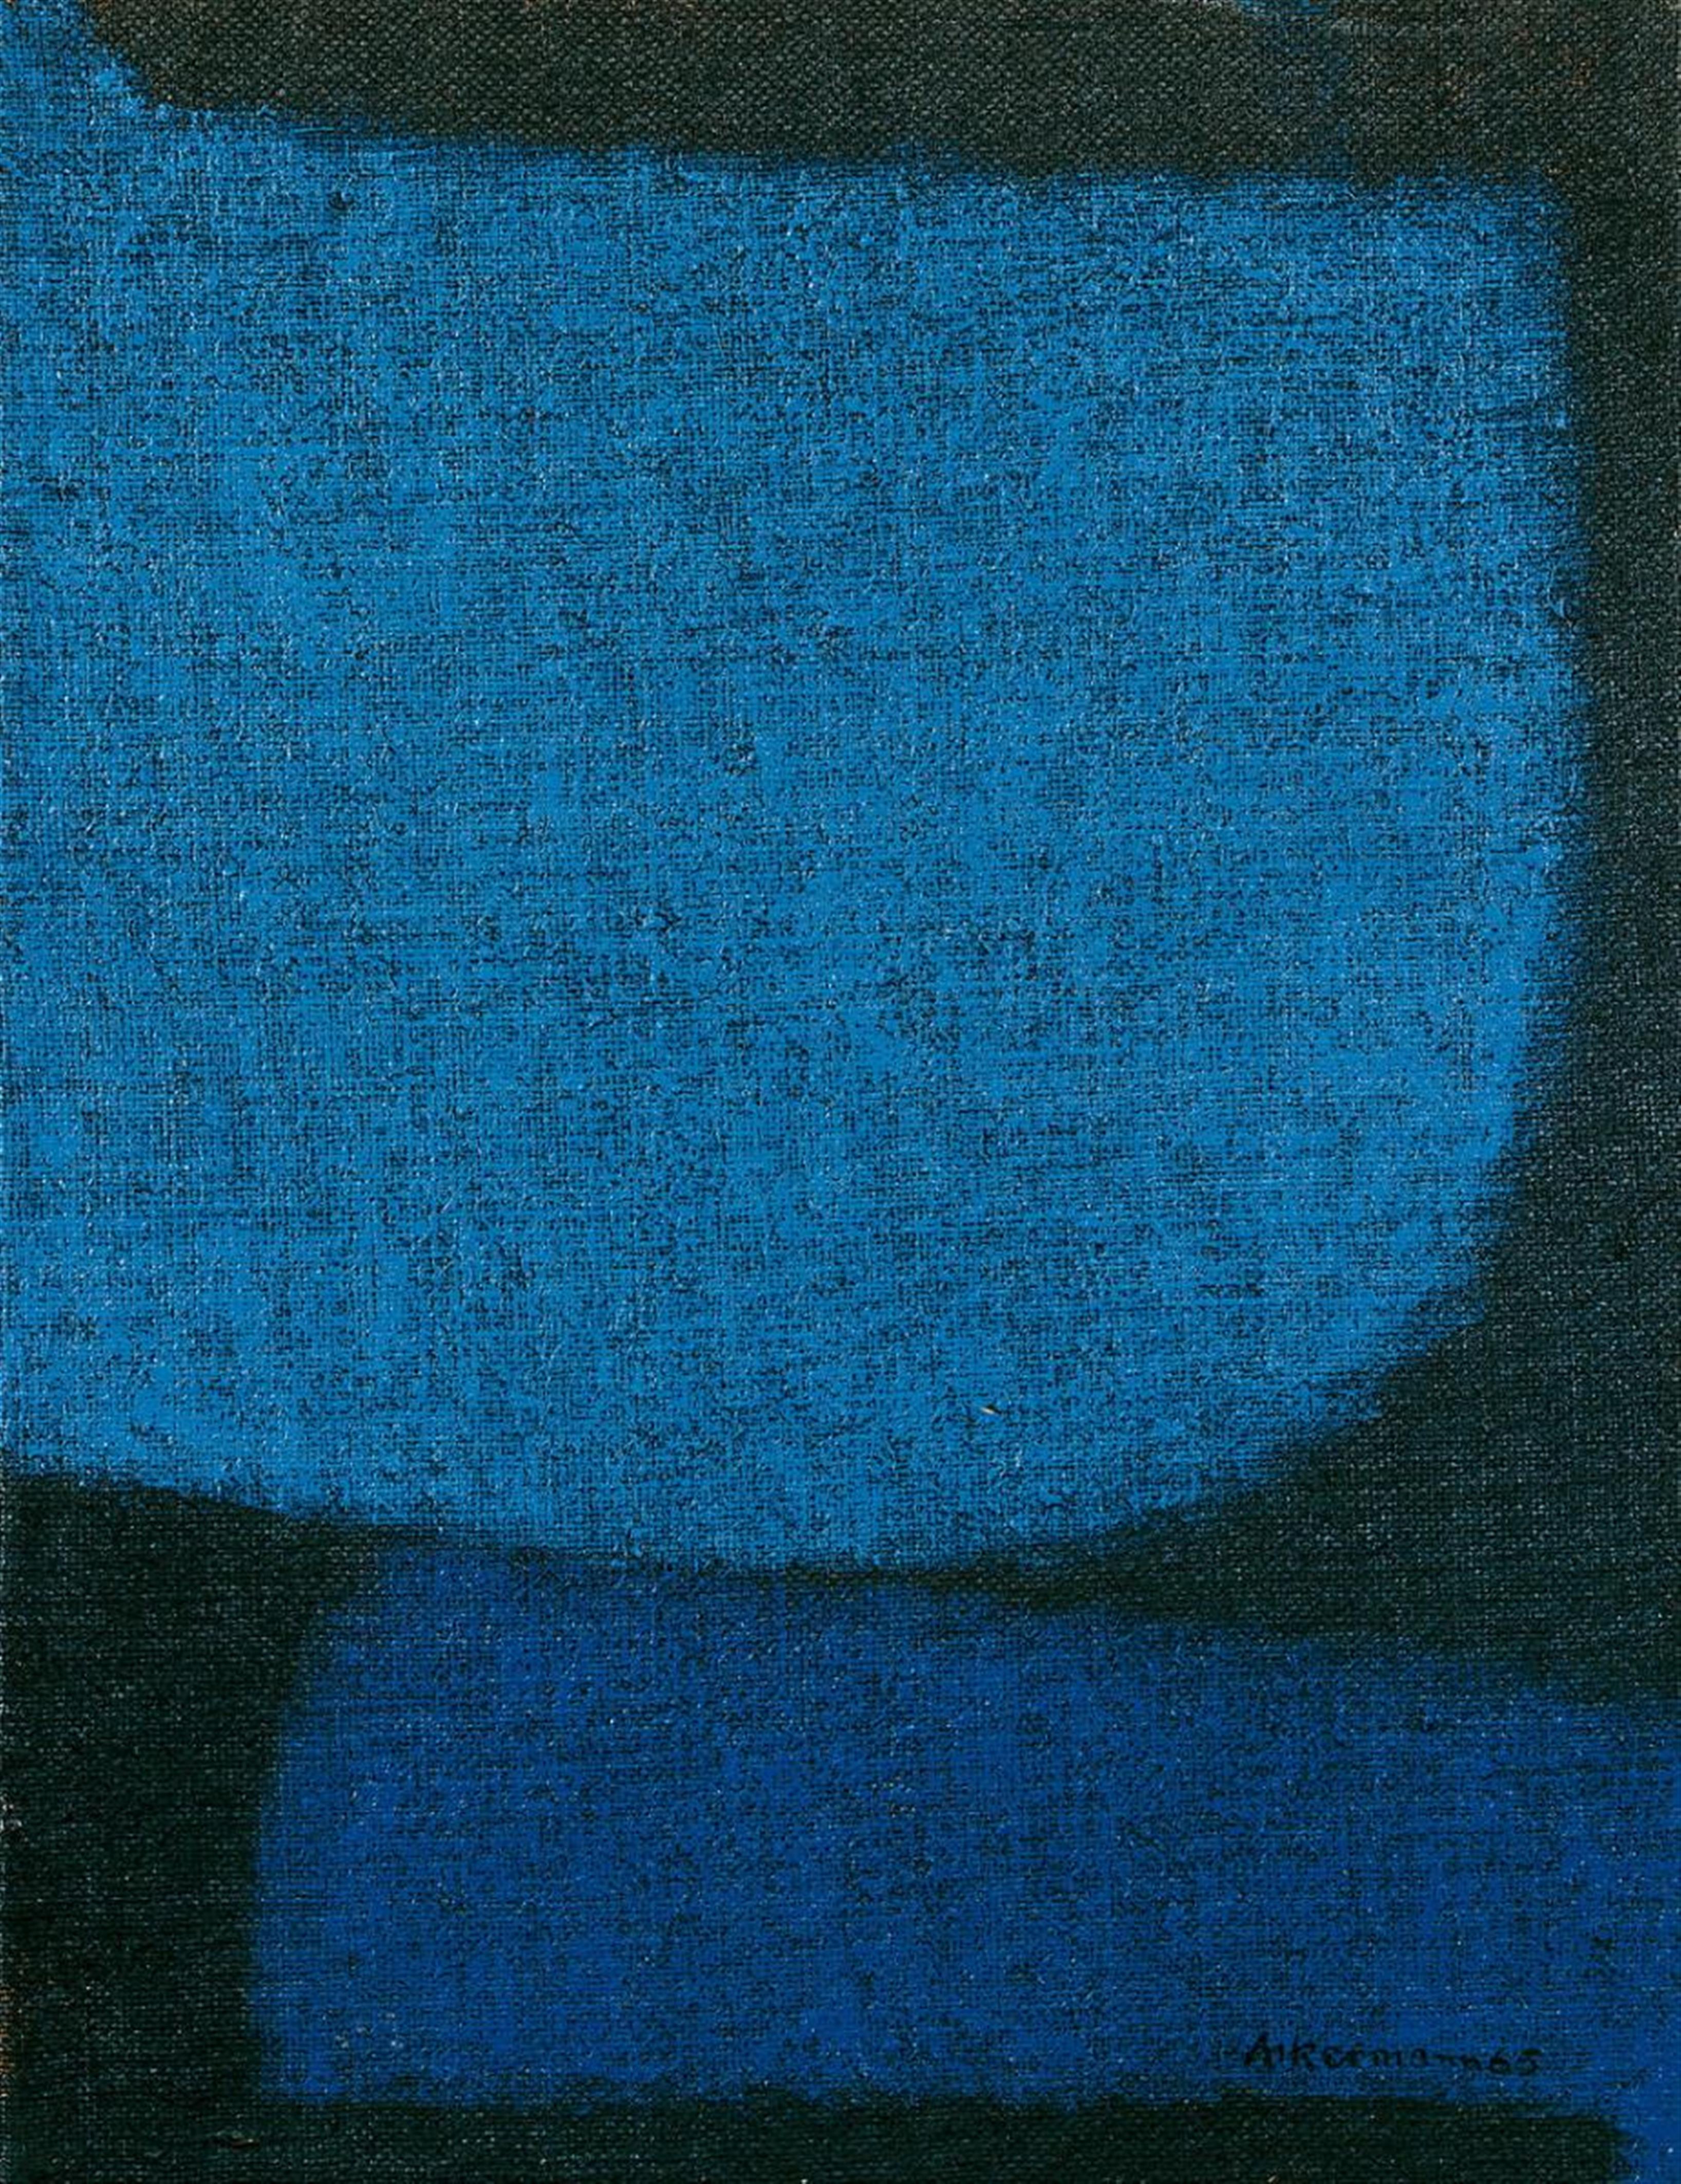 Max Ackermann - Komposition in Blau und Schwarz - image-1